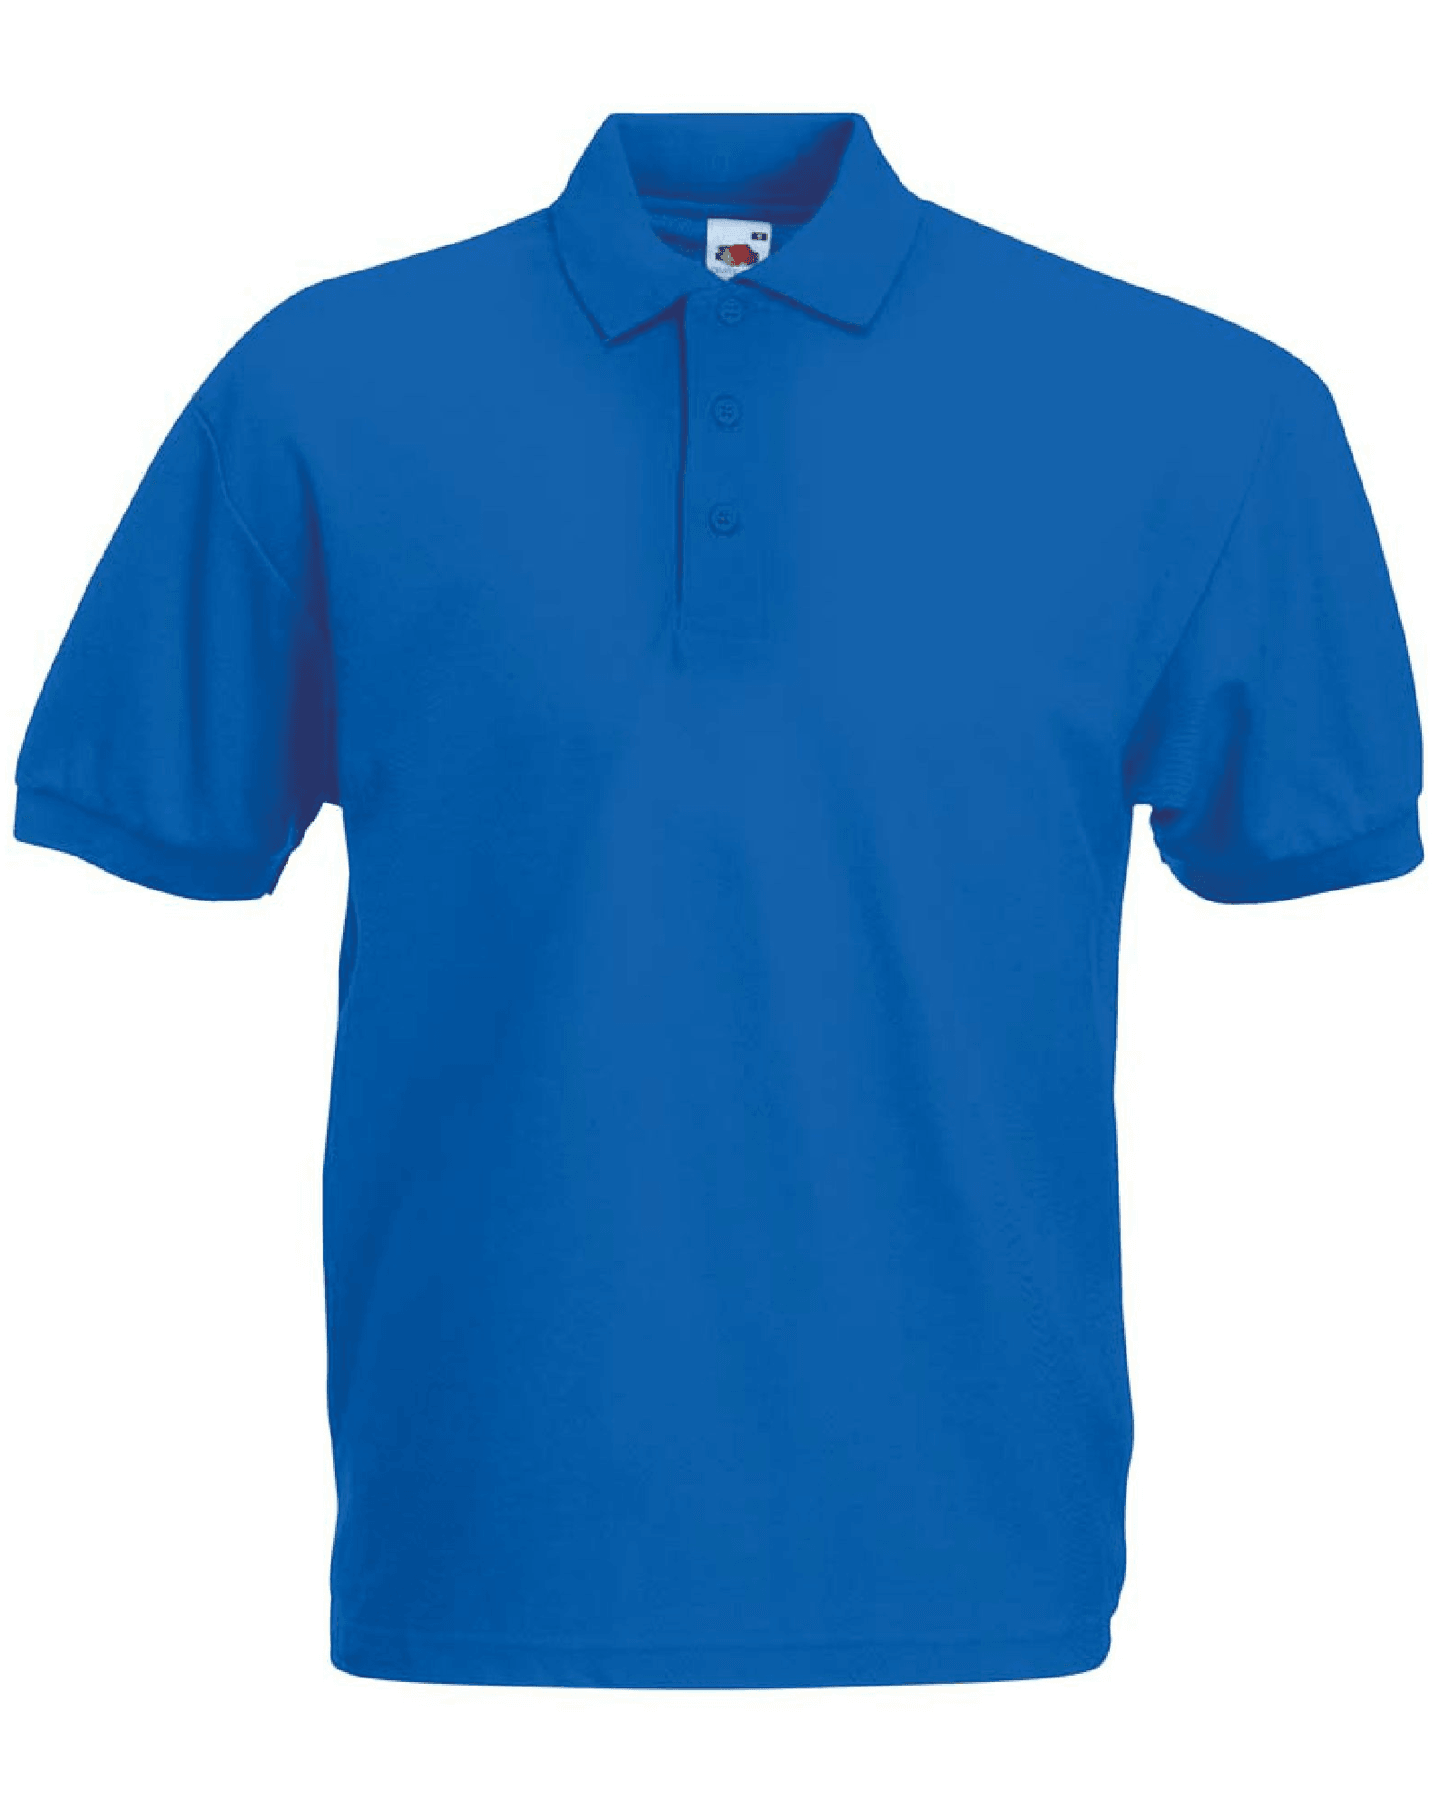 ISC – Piqué Polo Shirt (Unisex)